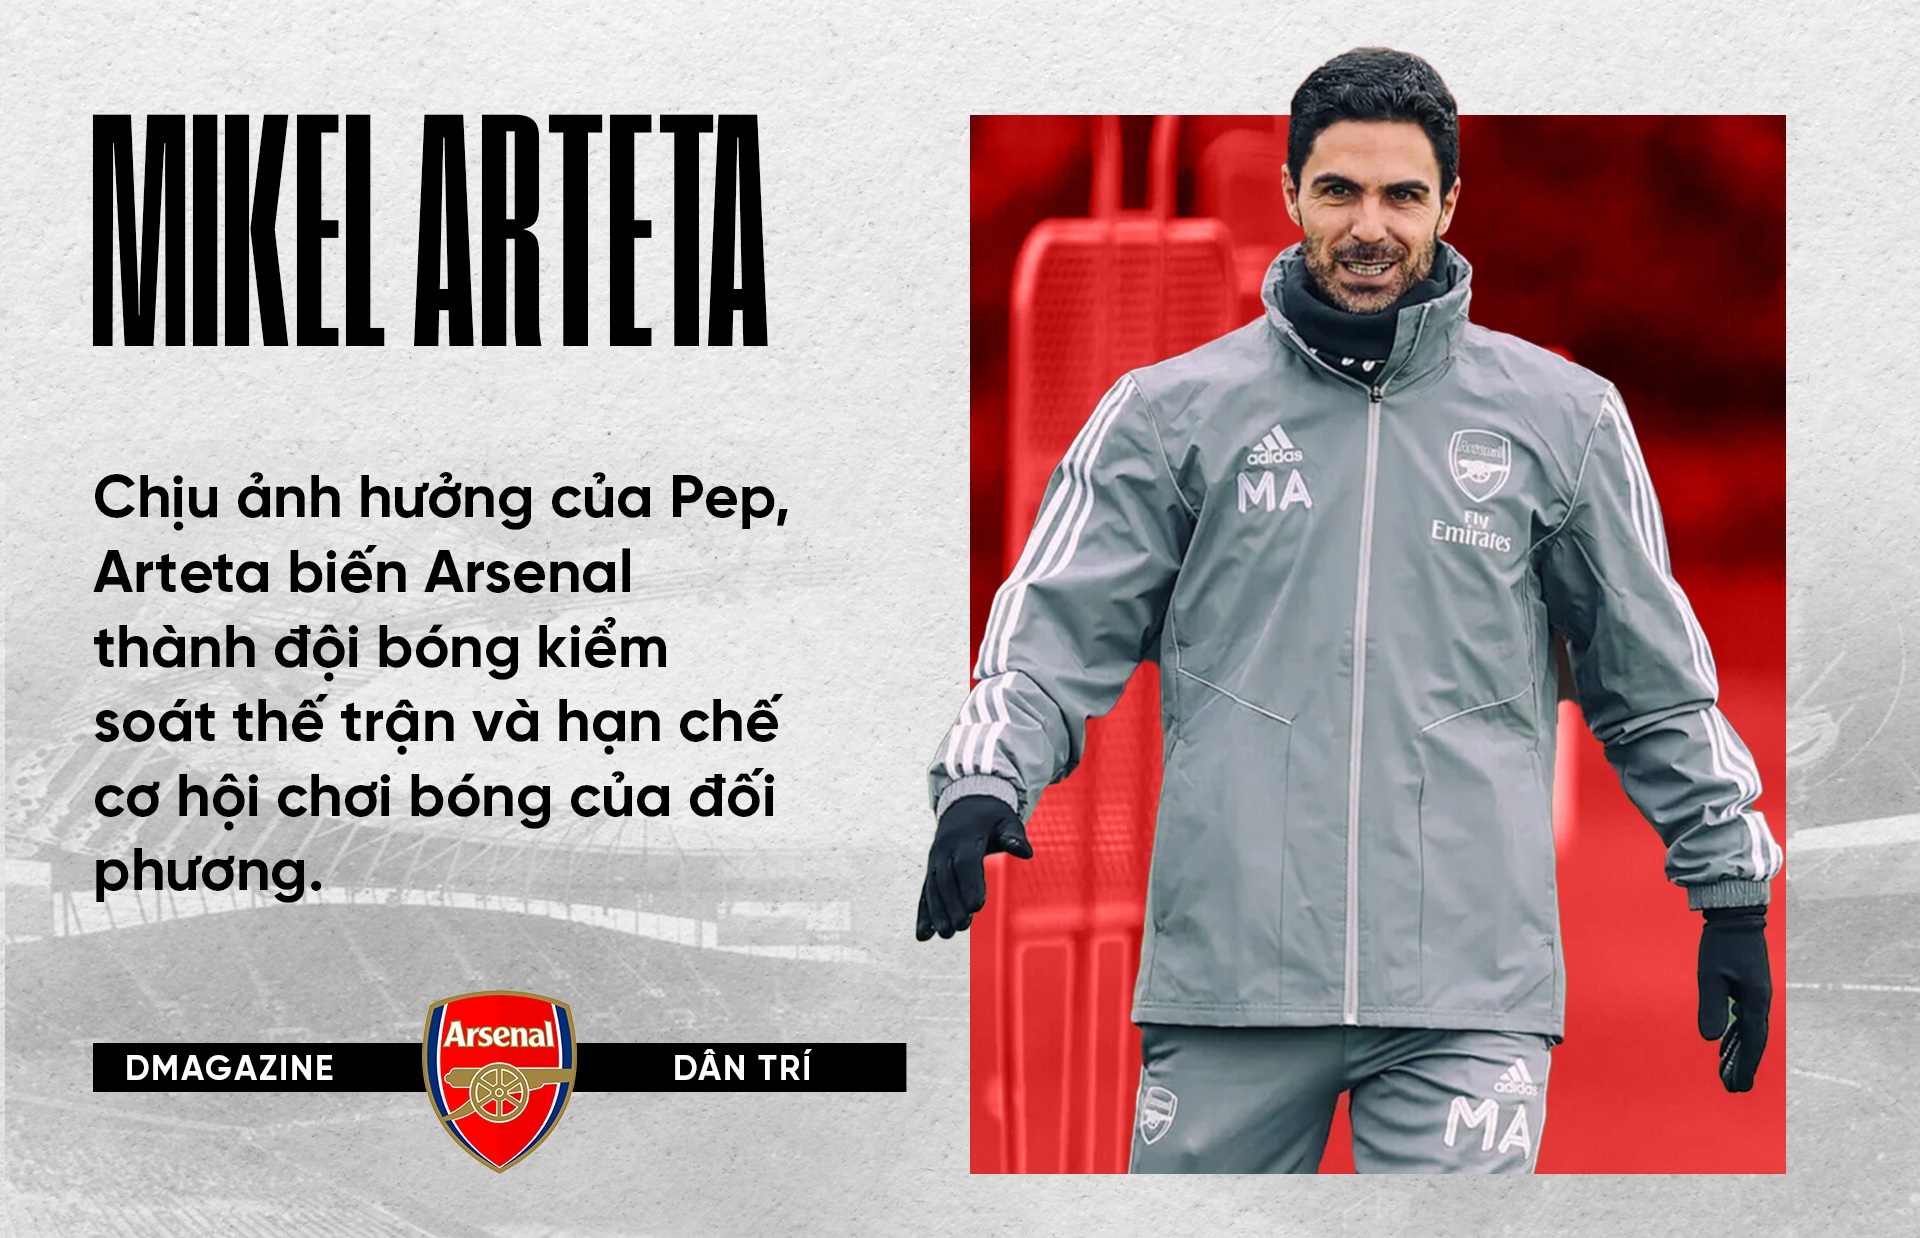 Cuộc đua vô địch Premier League: Độc lạ Arteta đấu thực dụng Guardiola - 19